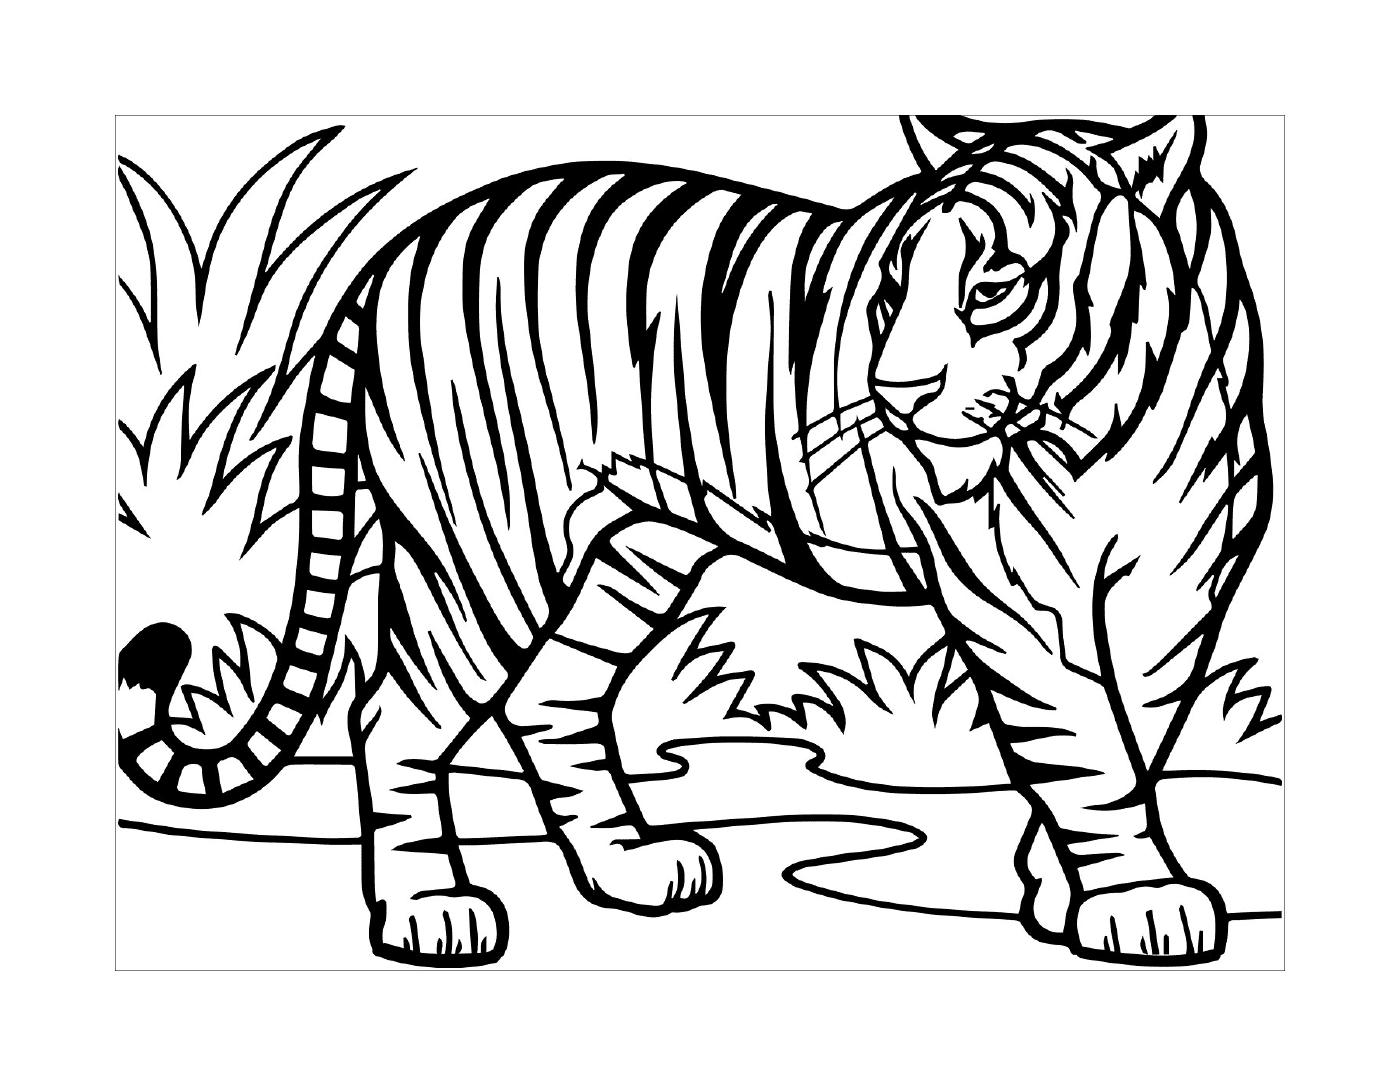  Um tigre selvagem na natureza 